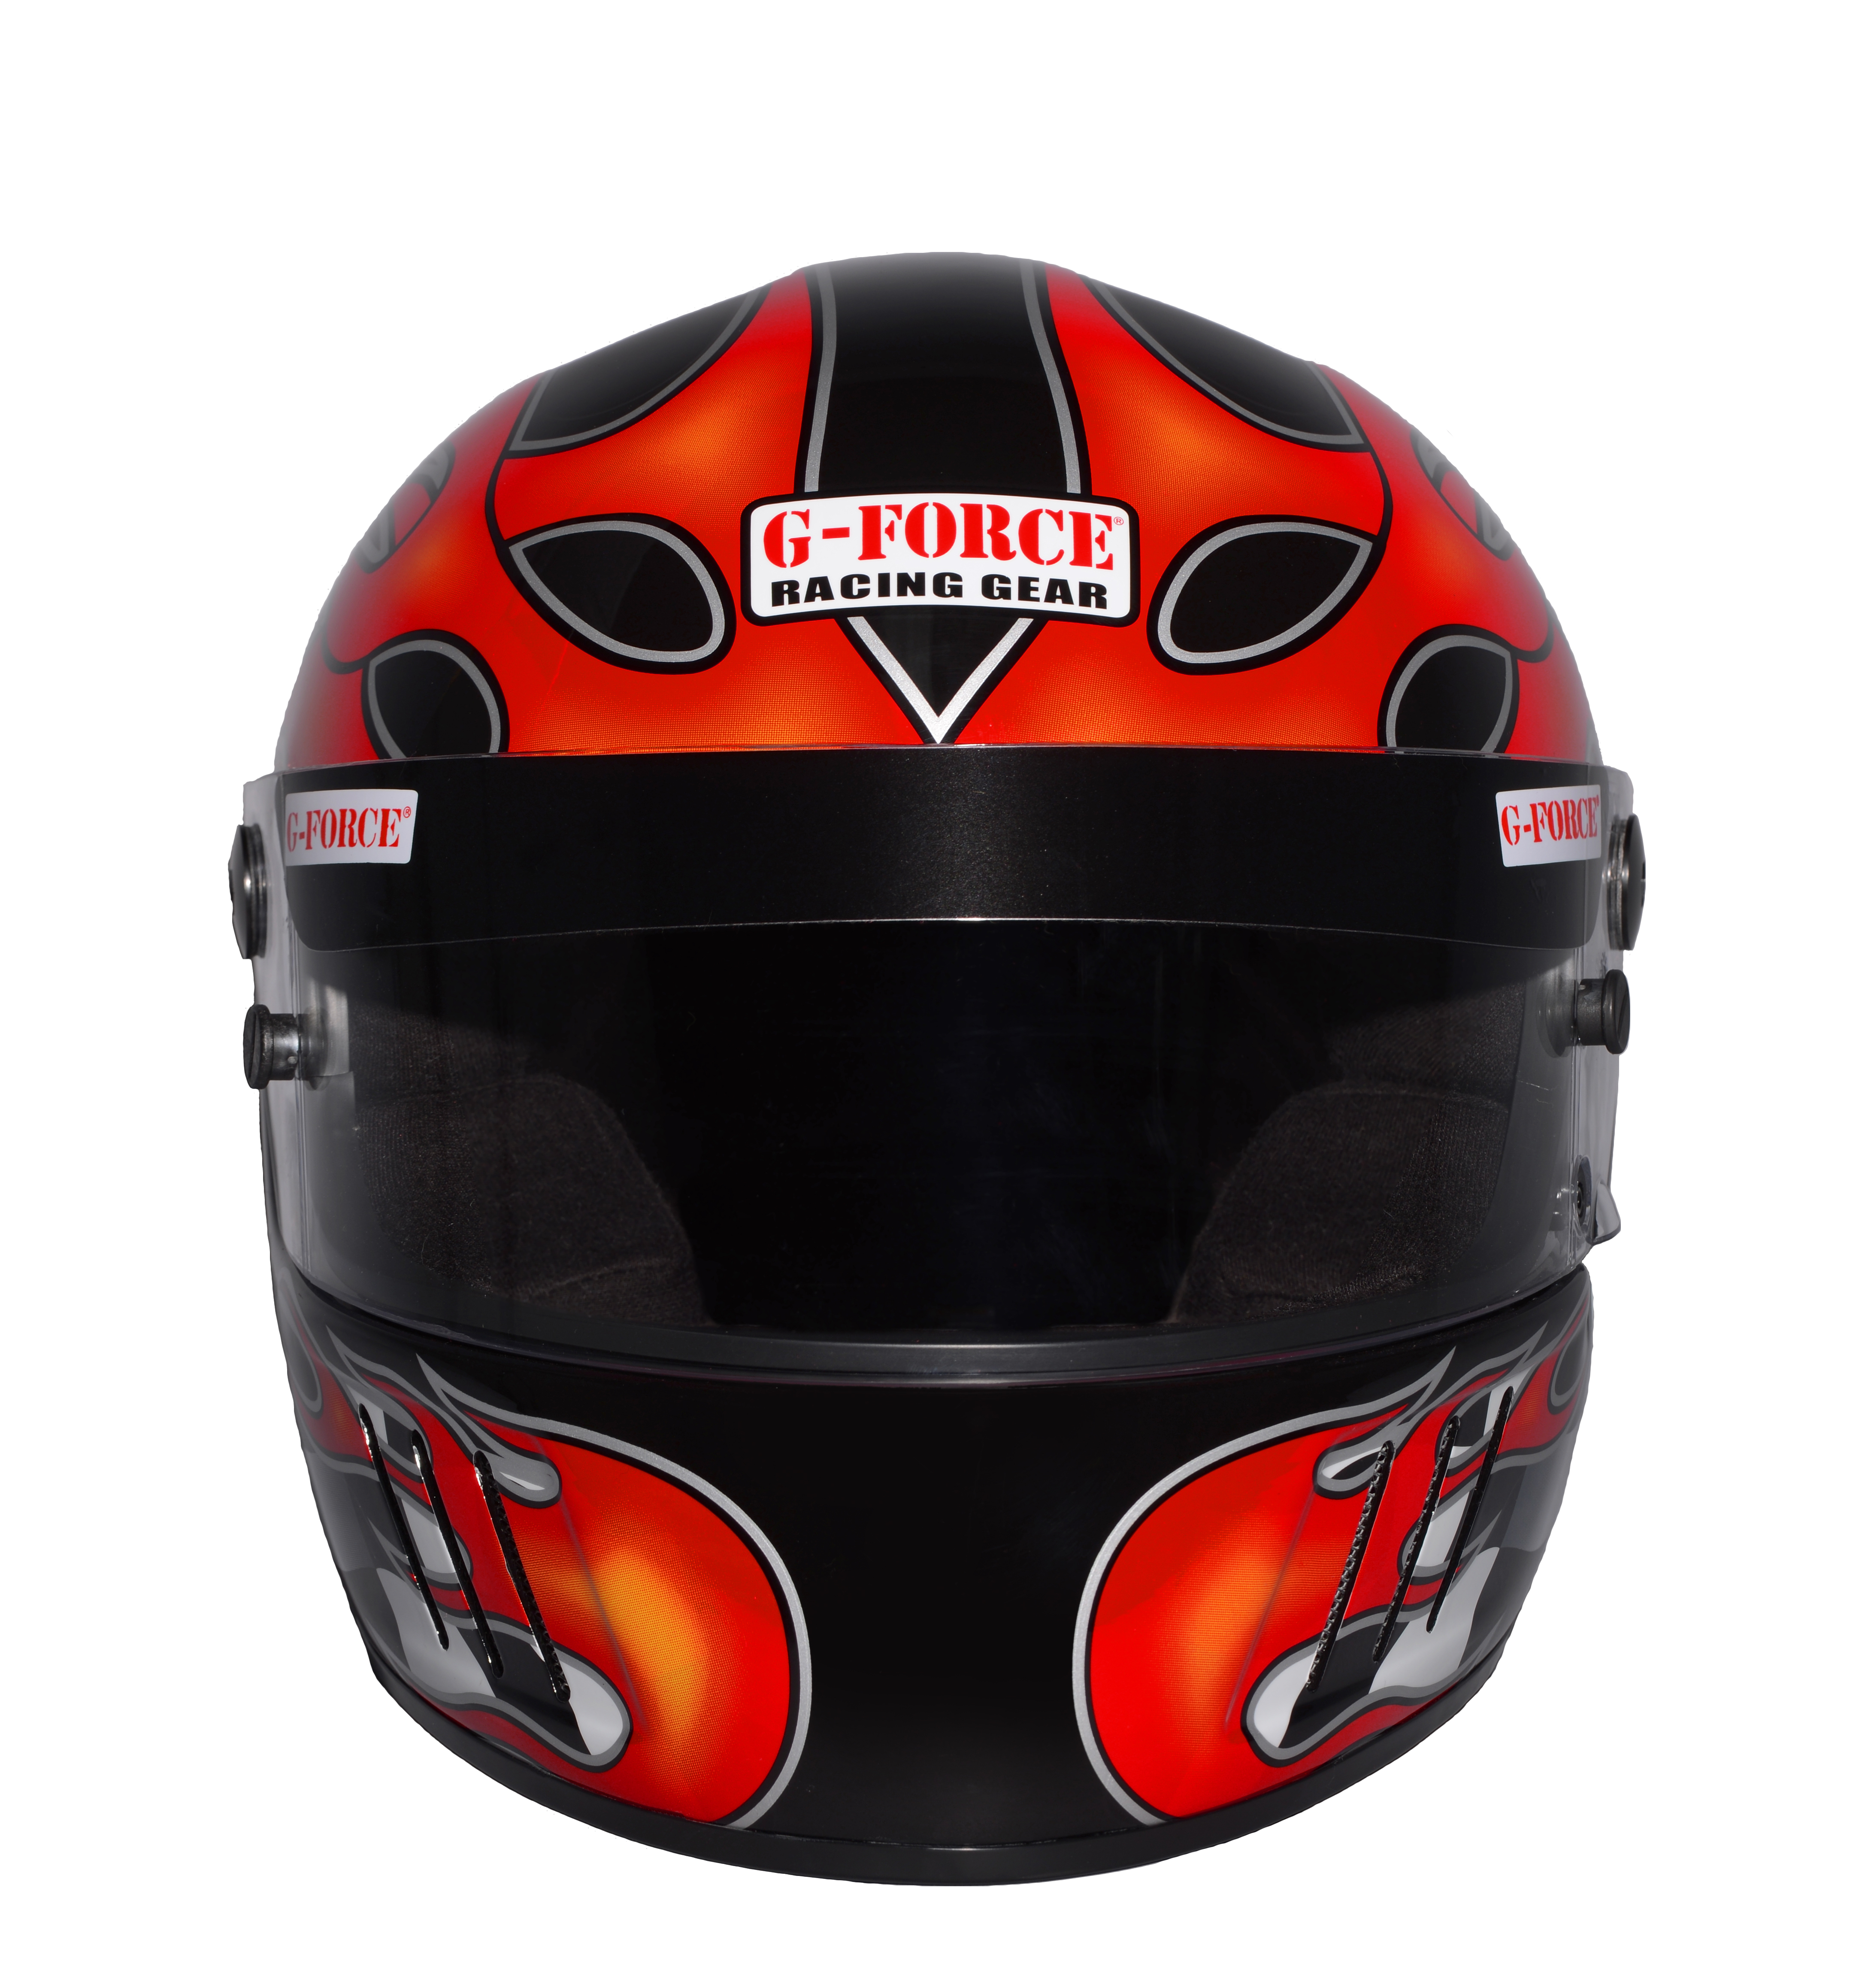 G-Force Racing Gear Helmet, PRO VINTAGE SA2010 FULL FACE MEDIUM BLACK